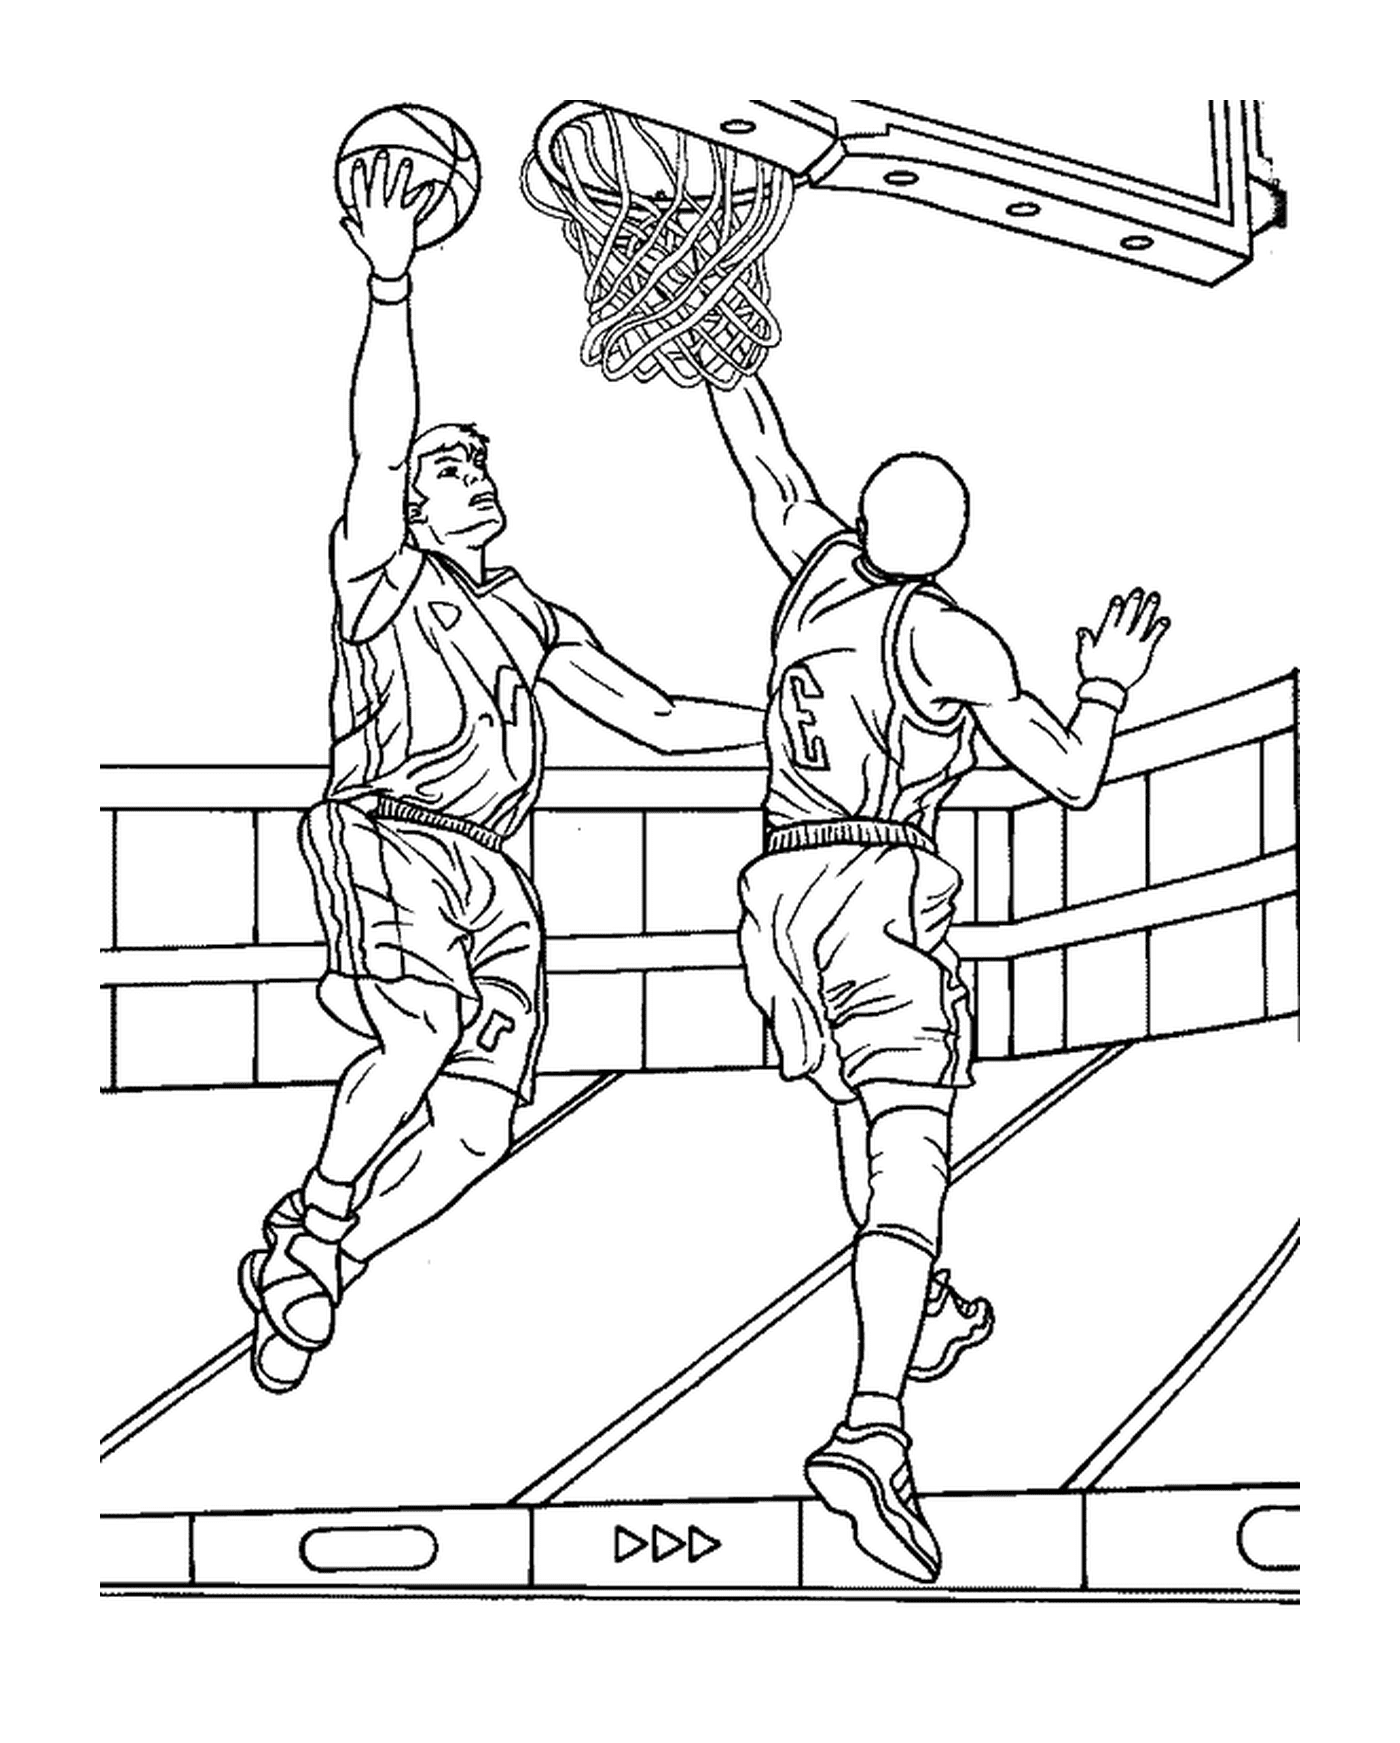  Il giocatore di basket segnare un cestino nonostante il difensore 